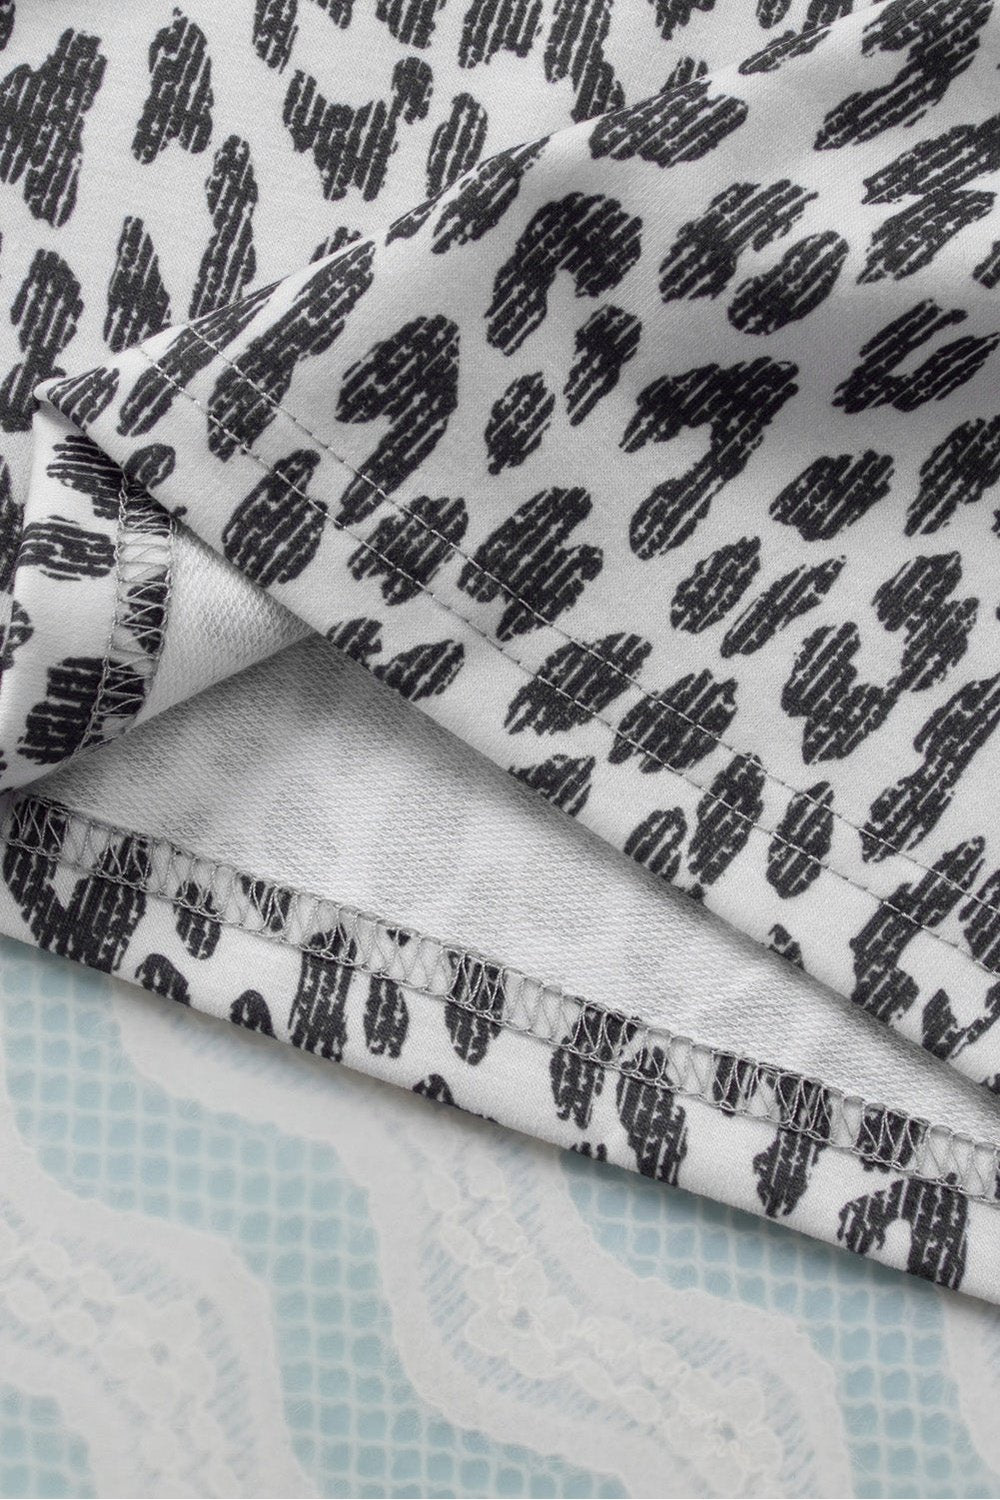 Plus Size Leopard Raglan Sleeve Hoodie - Sweatshirts & Hoodies - FITGGINS